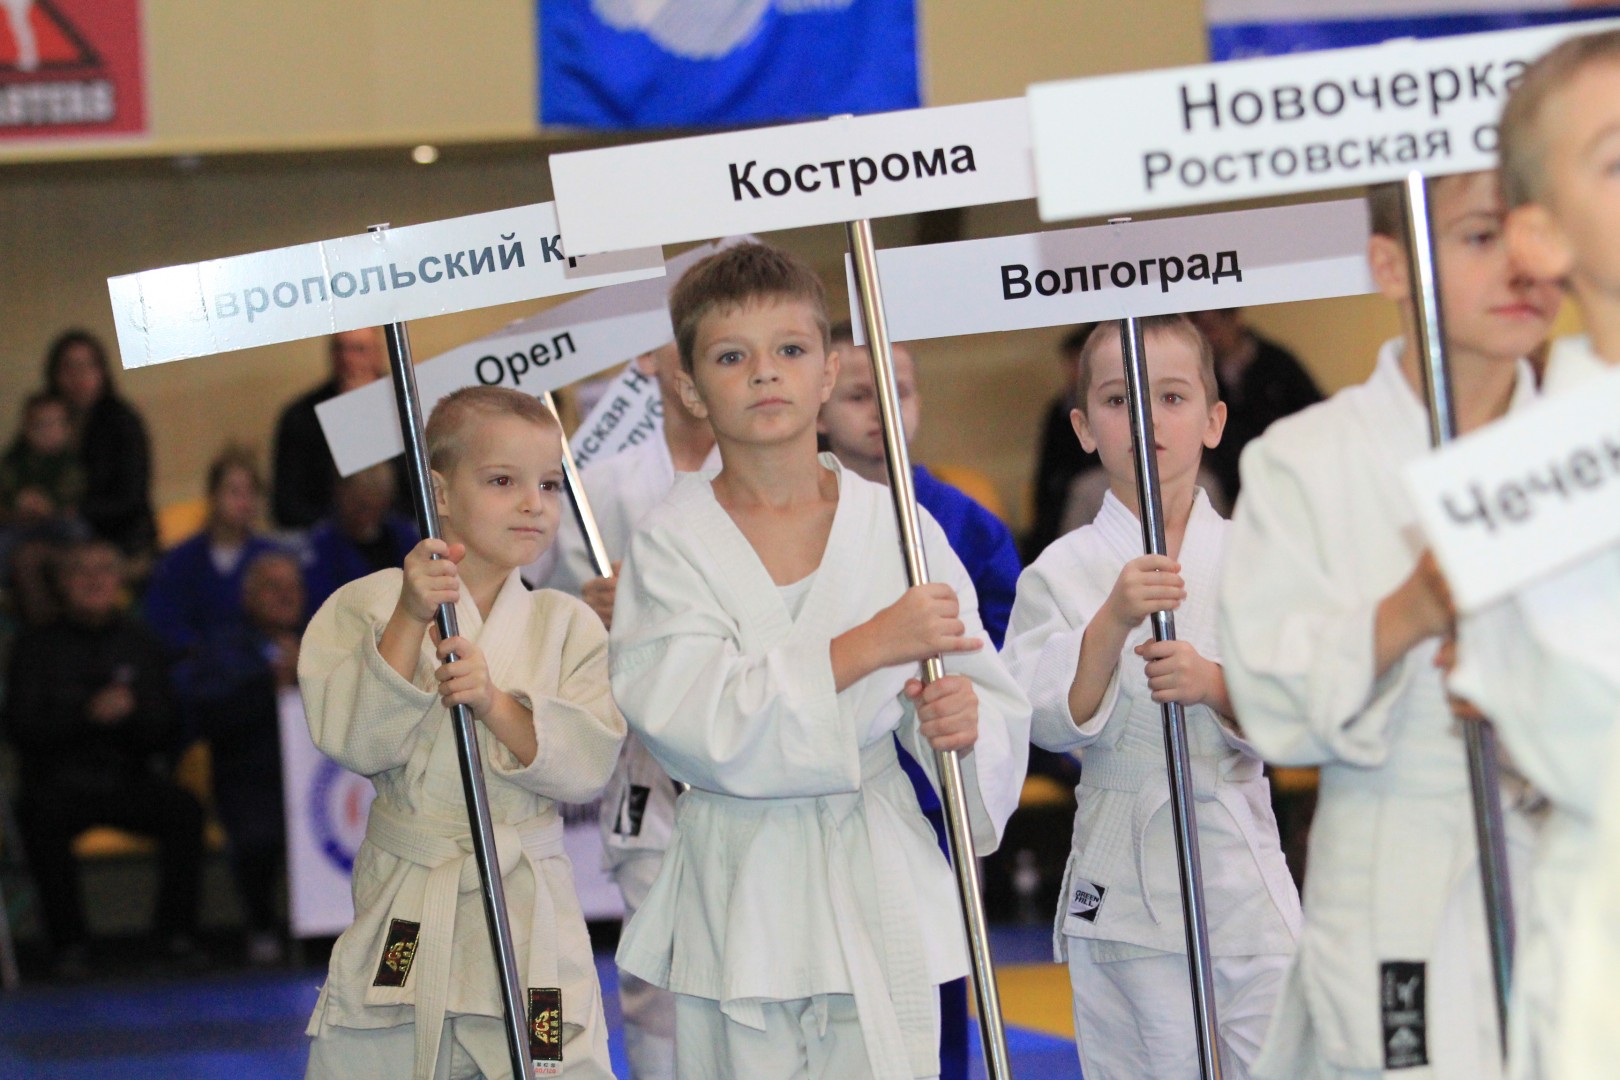 В Донецке стартовал масштабный Международный турнир по дзюдо с участием спортсменов ДНР, ЛНР и Российской Федерации